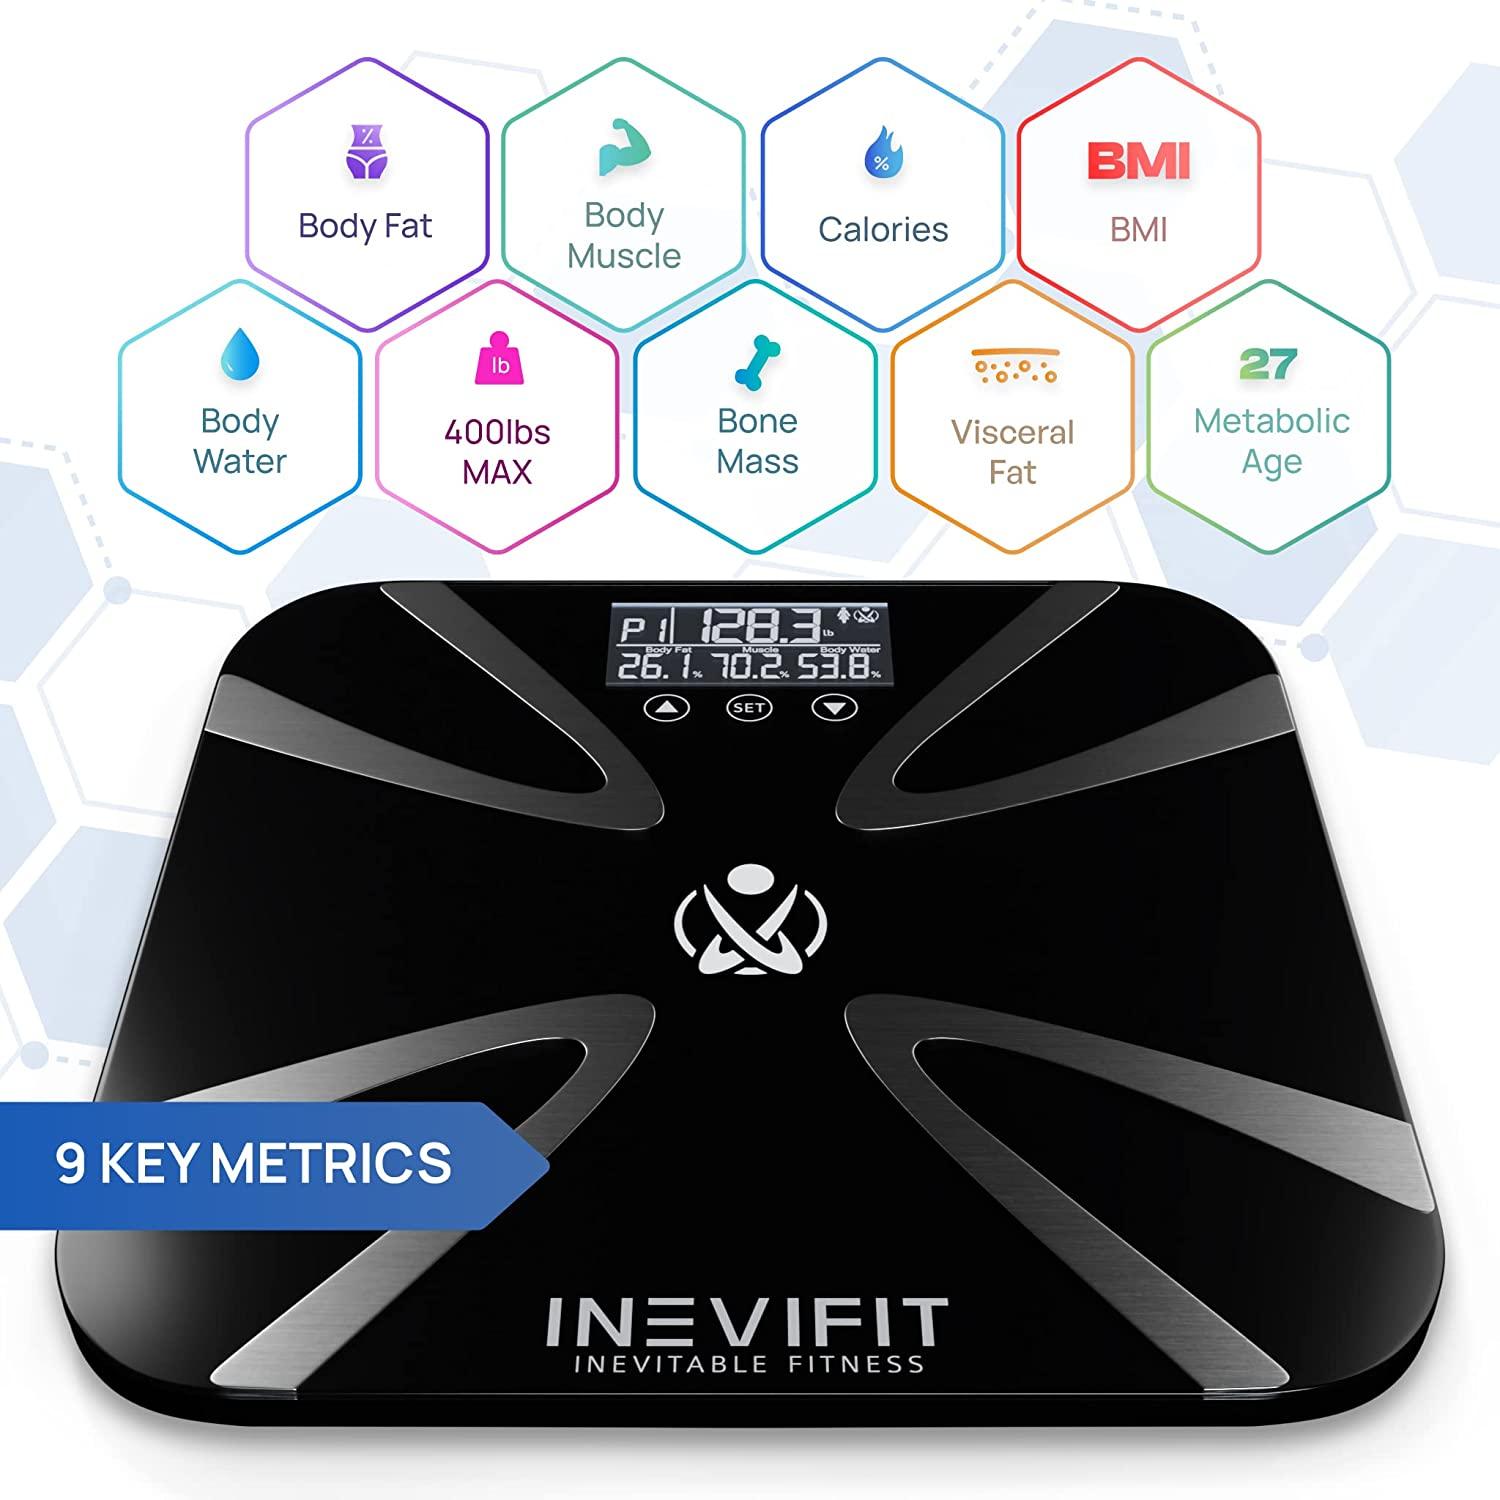 INEVIFIT Digital Bathroom Scale & Reviews